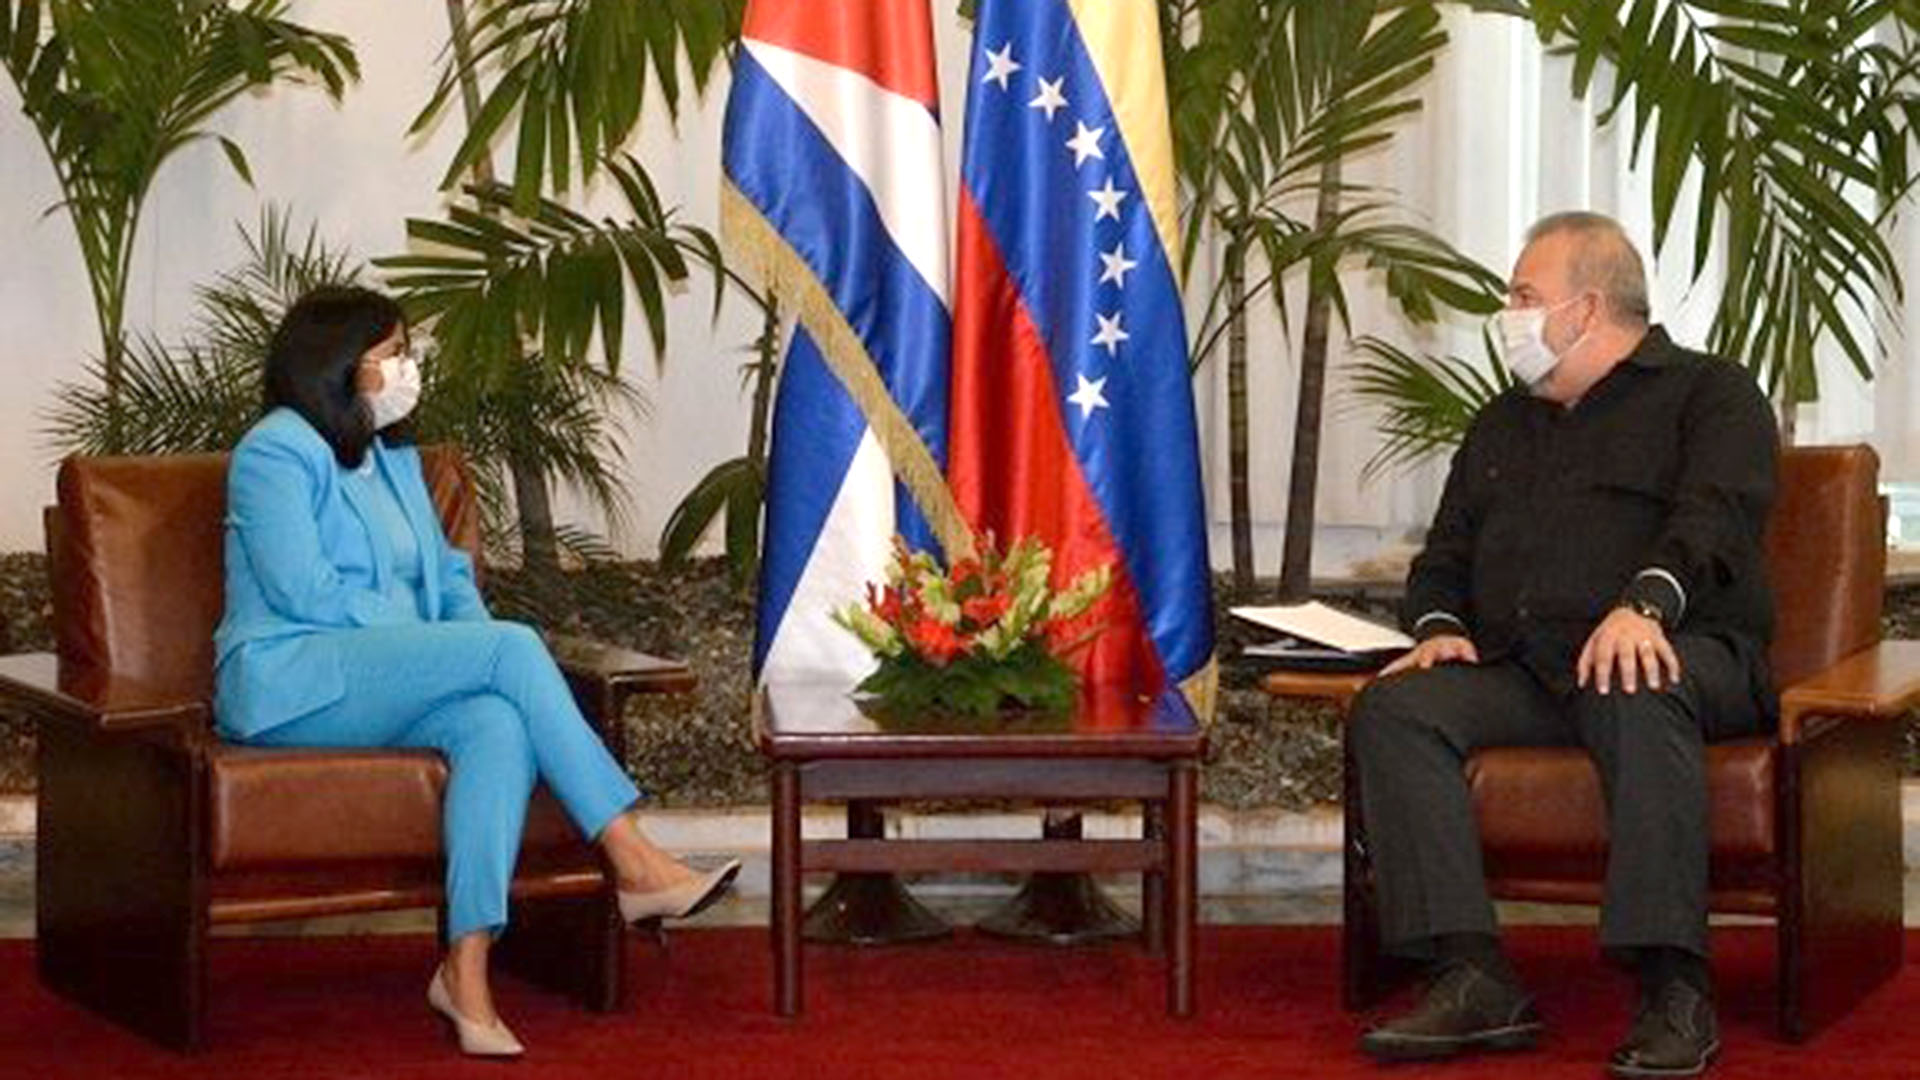 Nicolás Maduro envió a Delcy Rodríguez a Cuba a negociar una estrategia común para evadir las sanciones internacionales